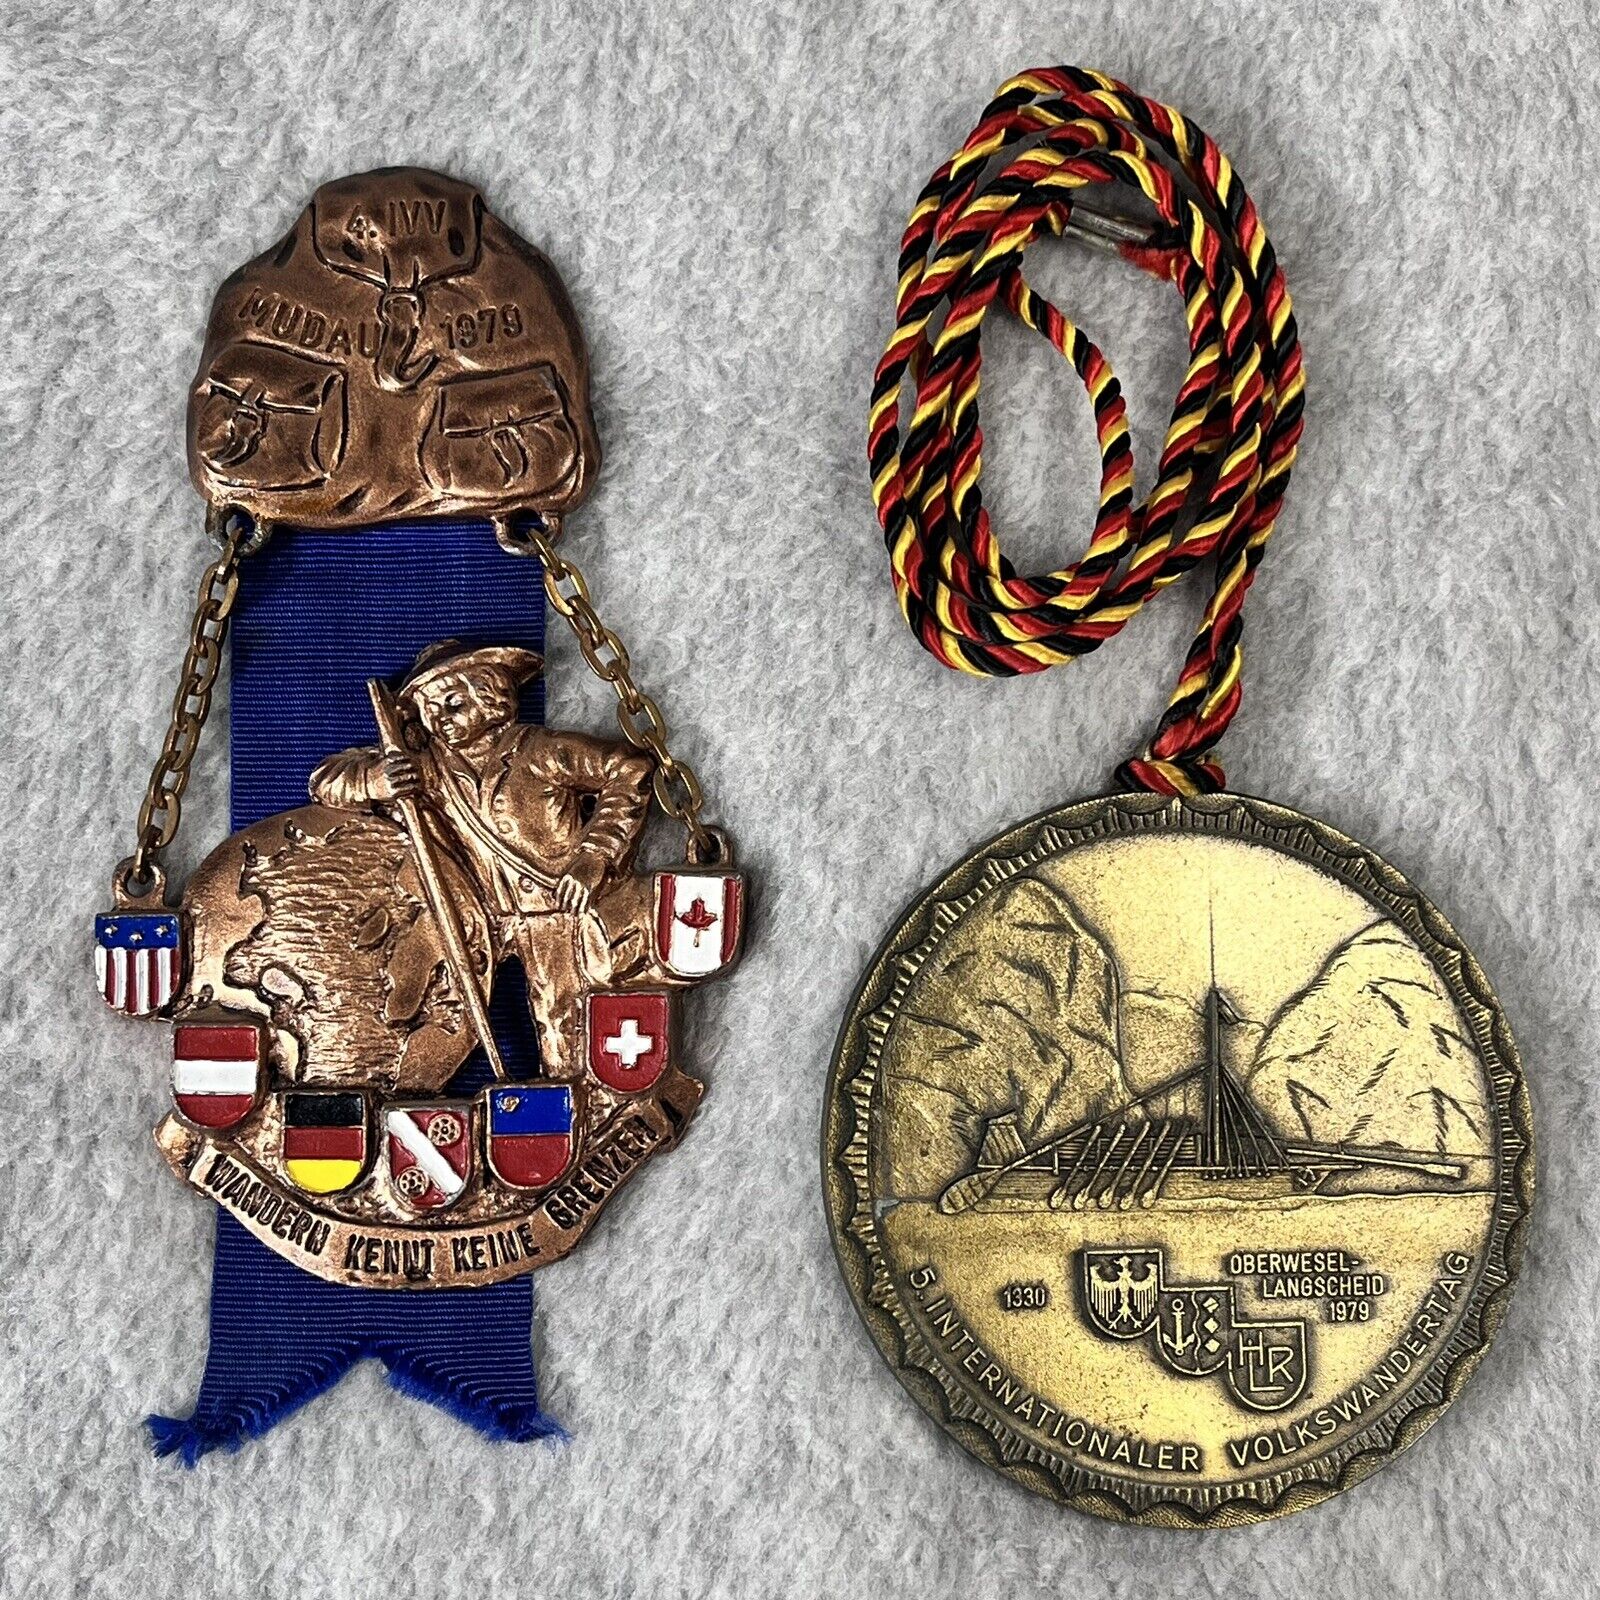 2 Vintage 1979 German International Volksmarch Medals Volkswandertag